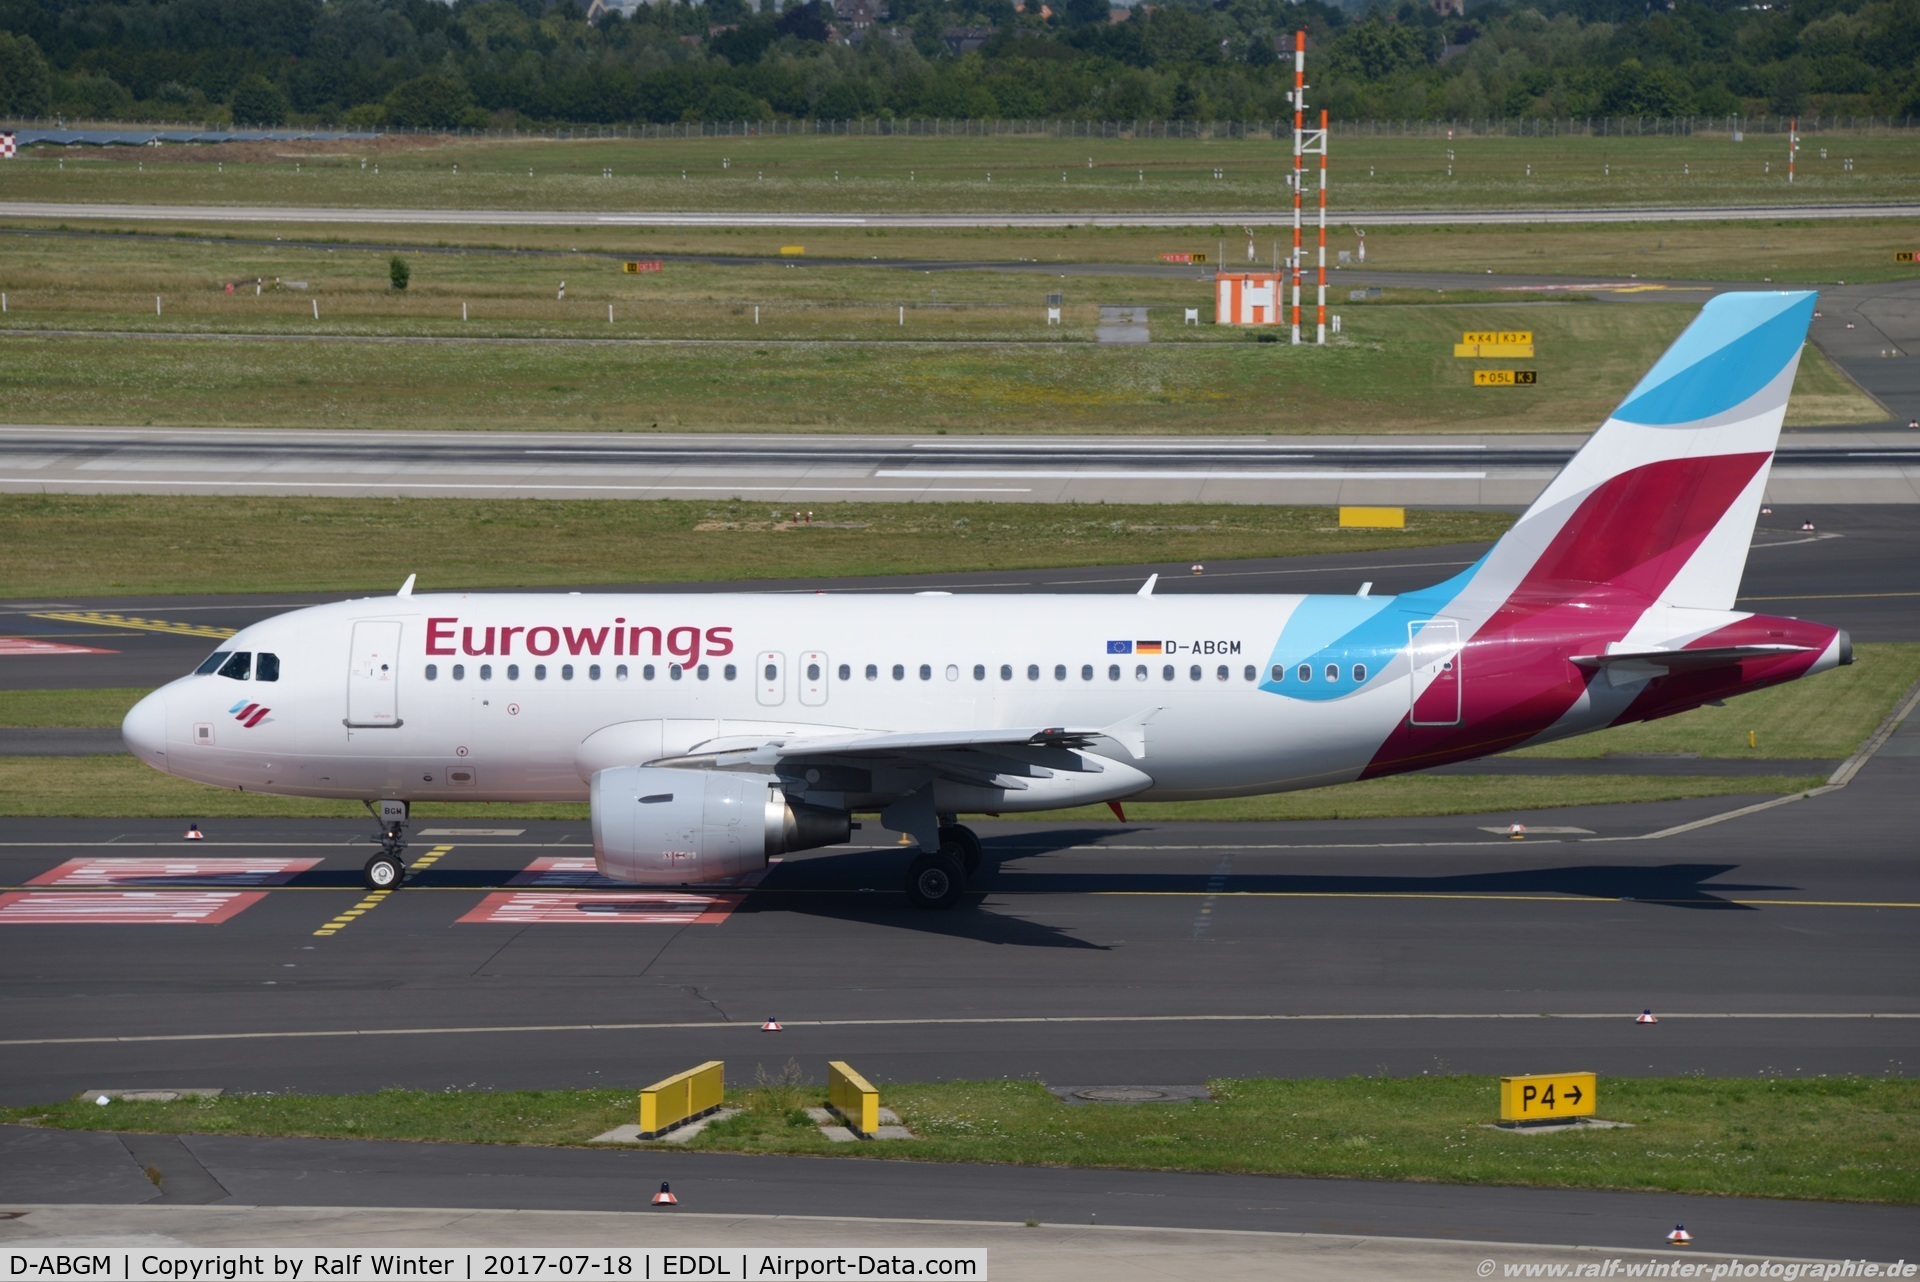 D-ABGM, 2008 Airbus A319-112 C/N 3604, Airbus A319-112 - EW EWG Eurowings - 3604 - D-ABGM - 18.07.2017 - DUS